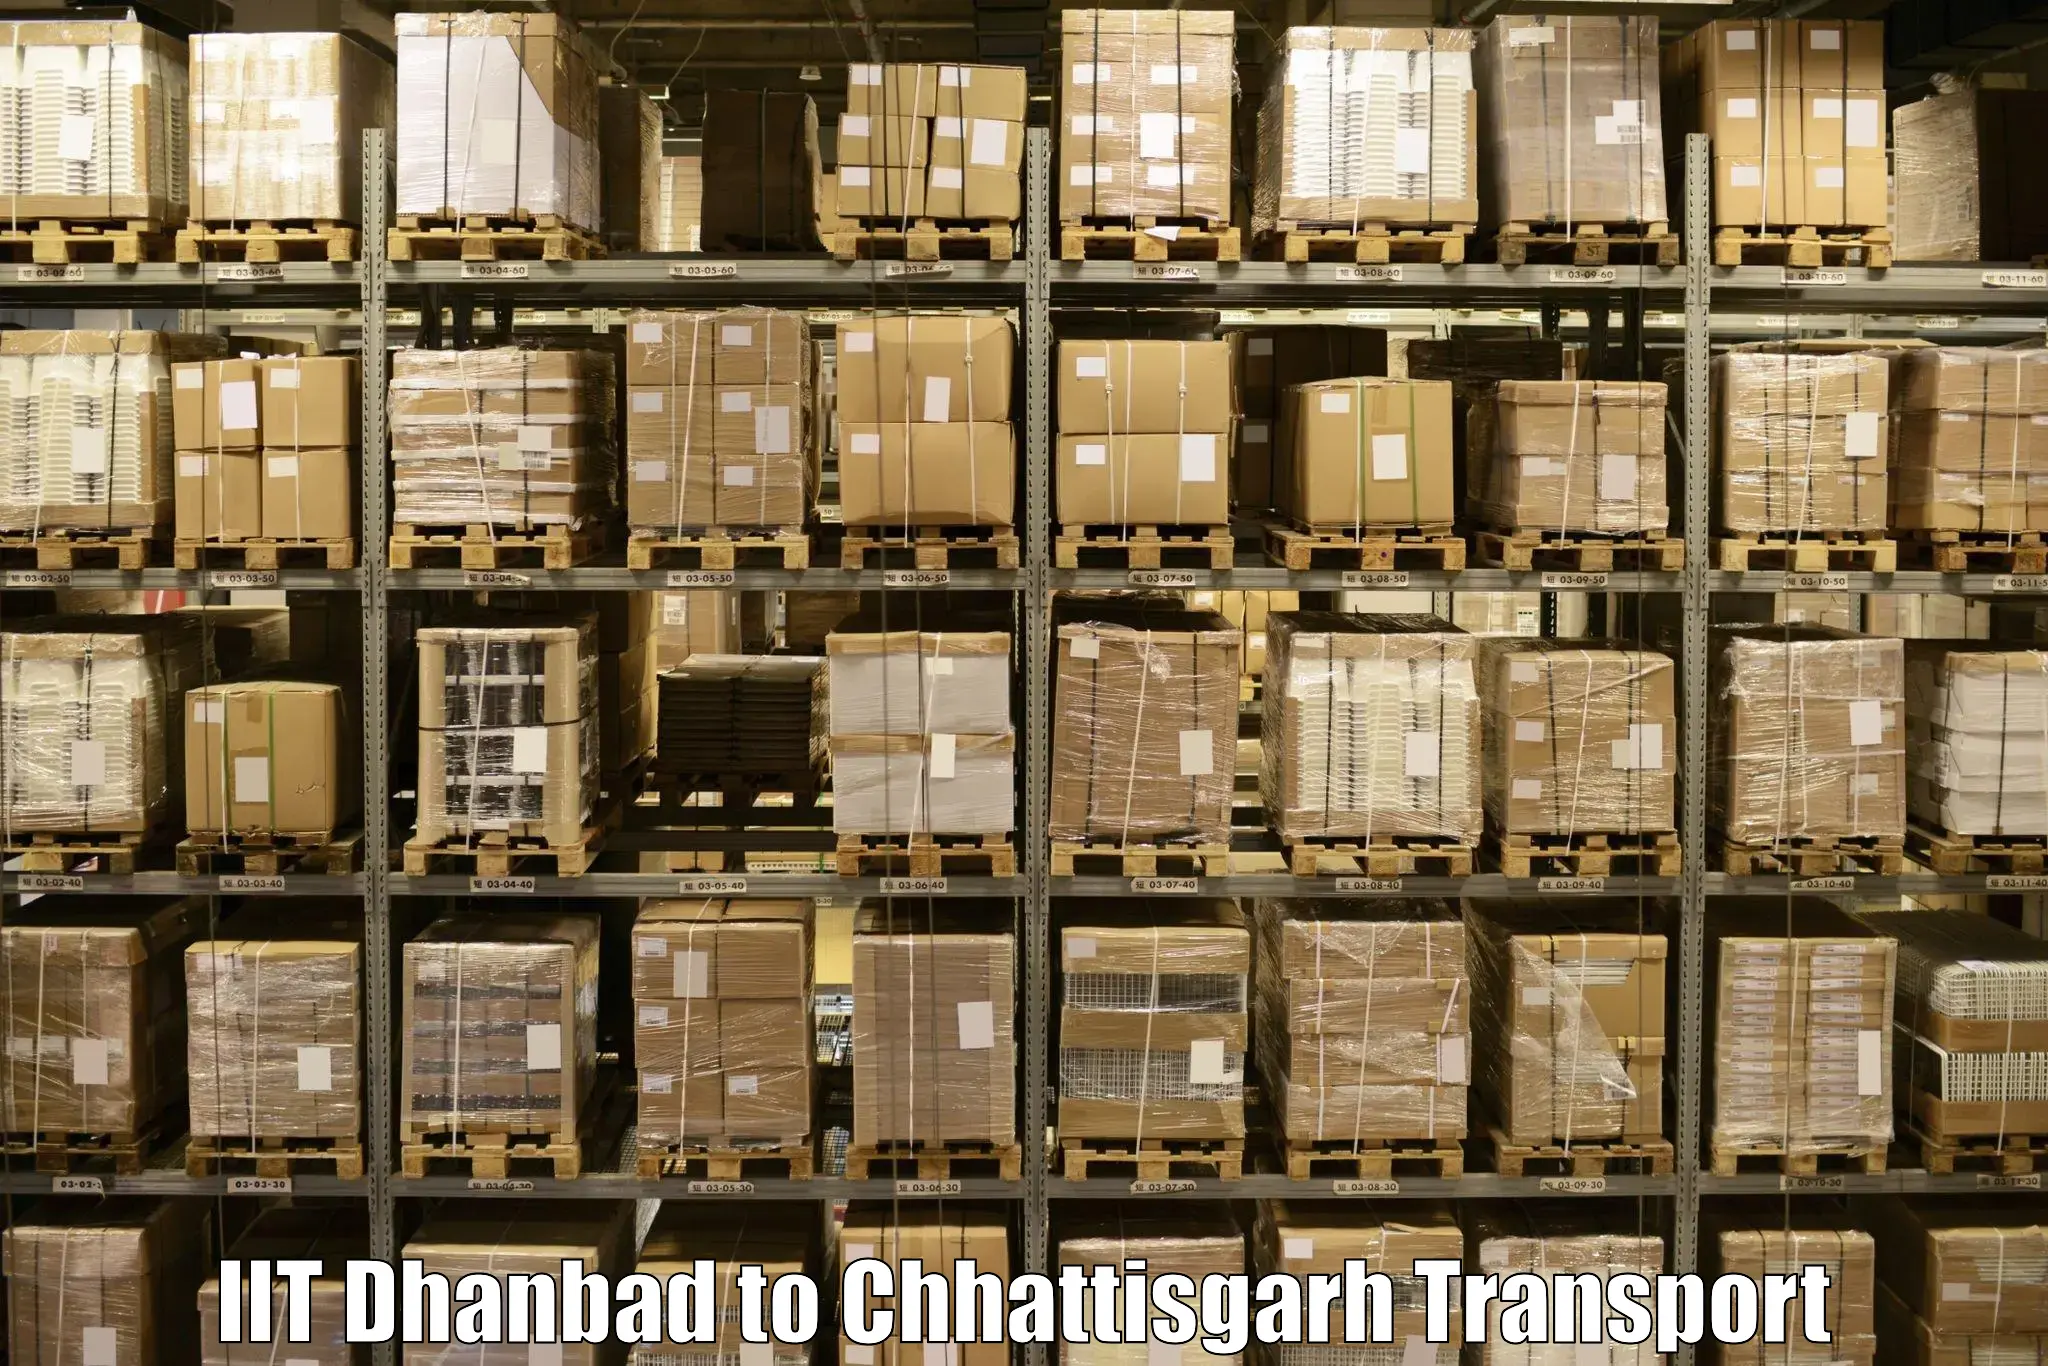 Online transport service IIT Dhanbad to Baloda Bazar